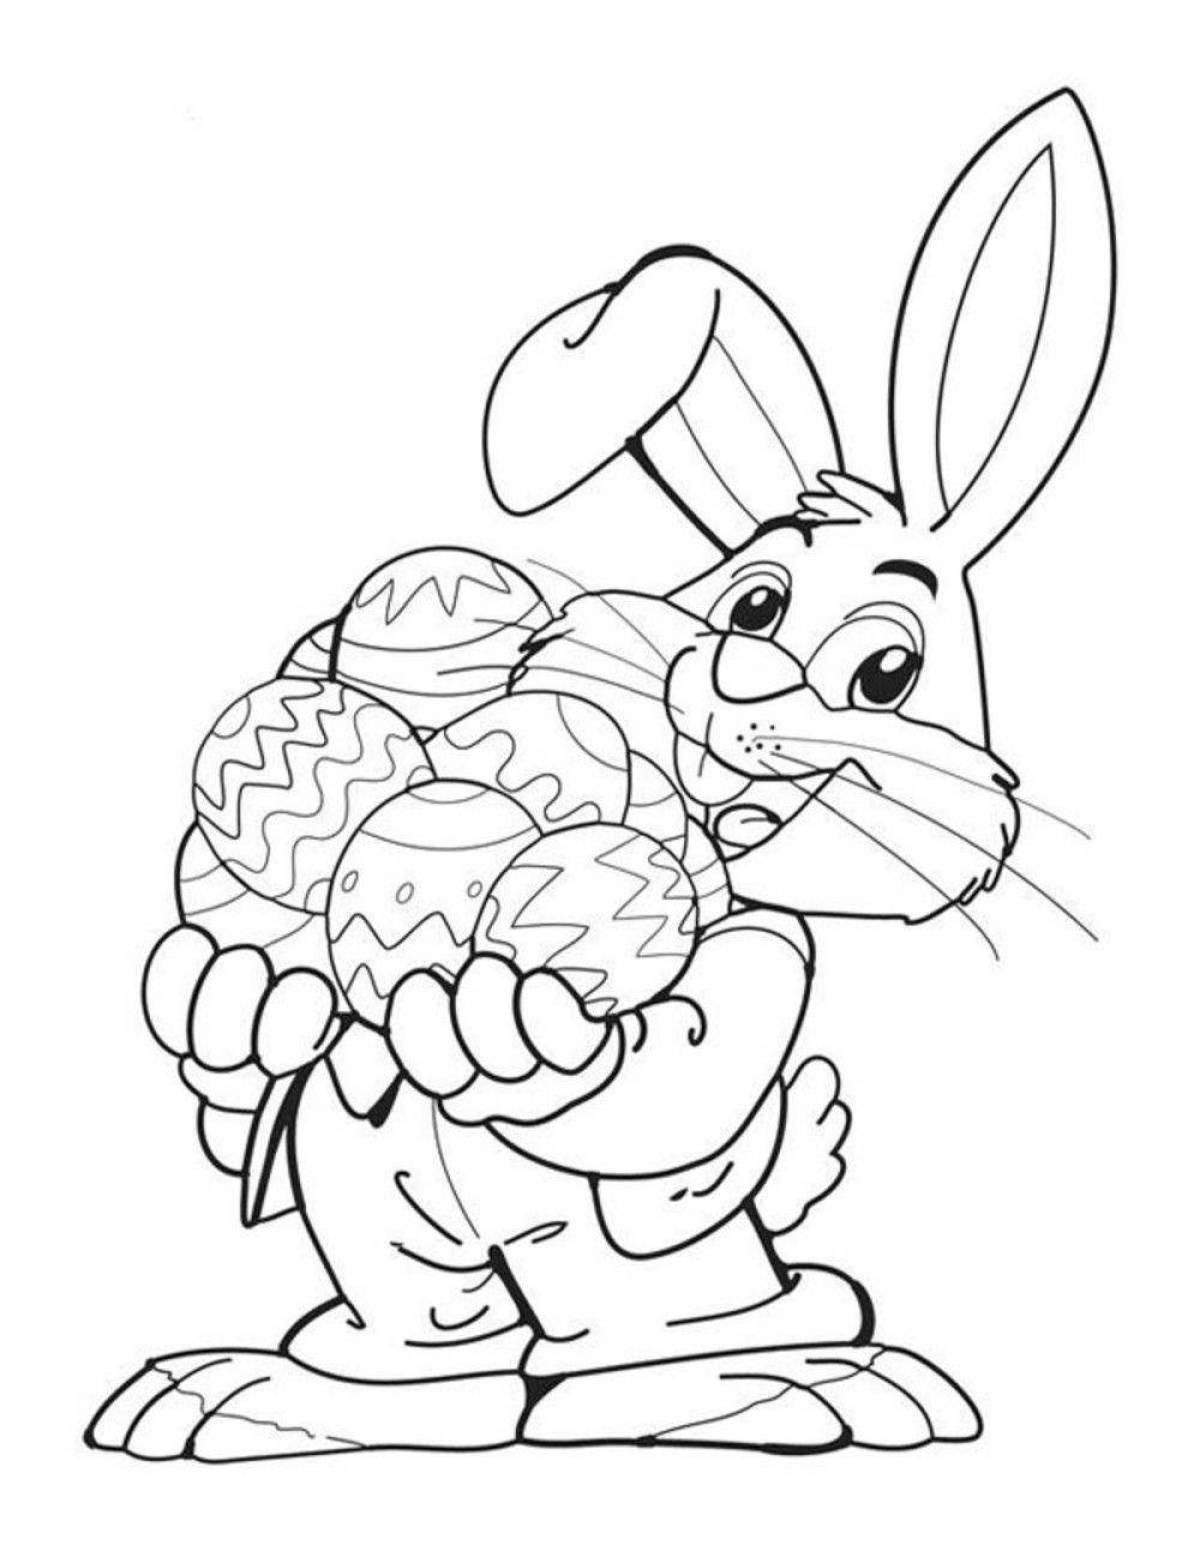 Раскраска на Пасху для детей с кроликом